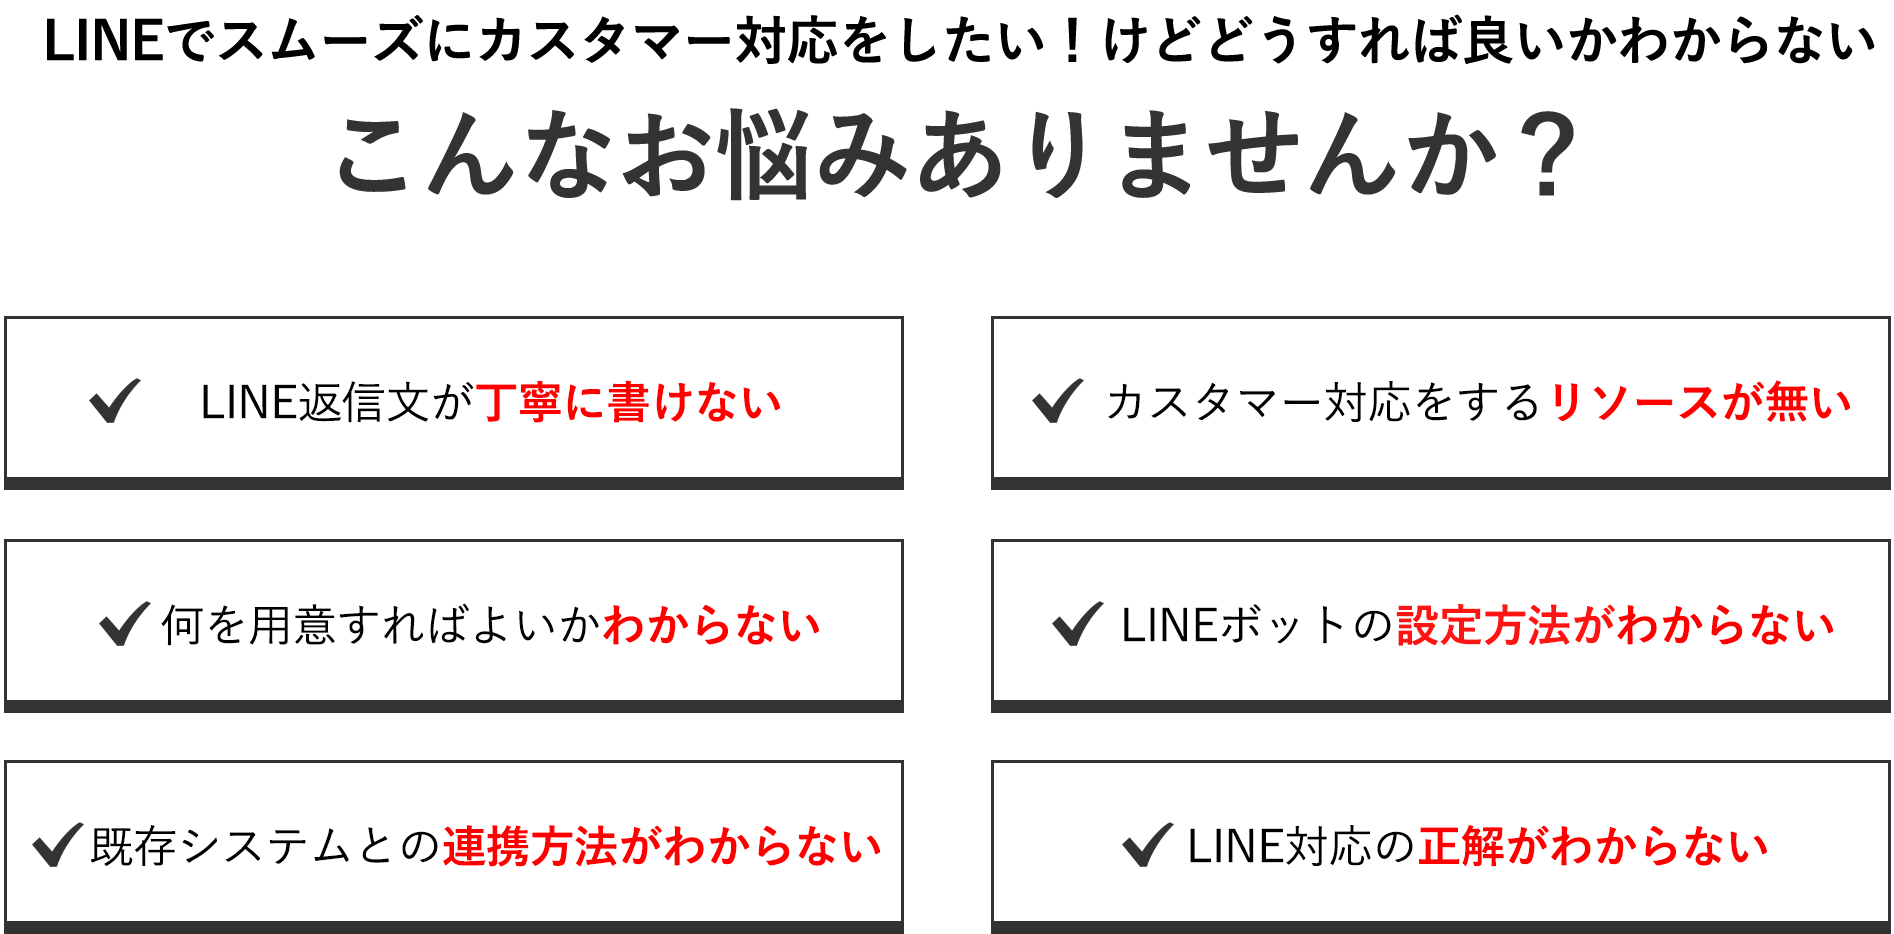 LINE活用における導入ハードル